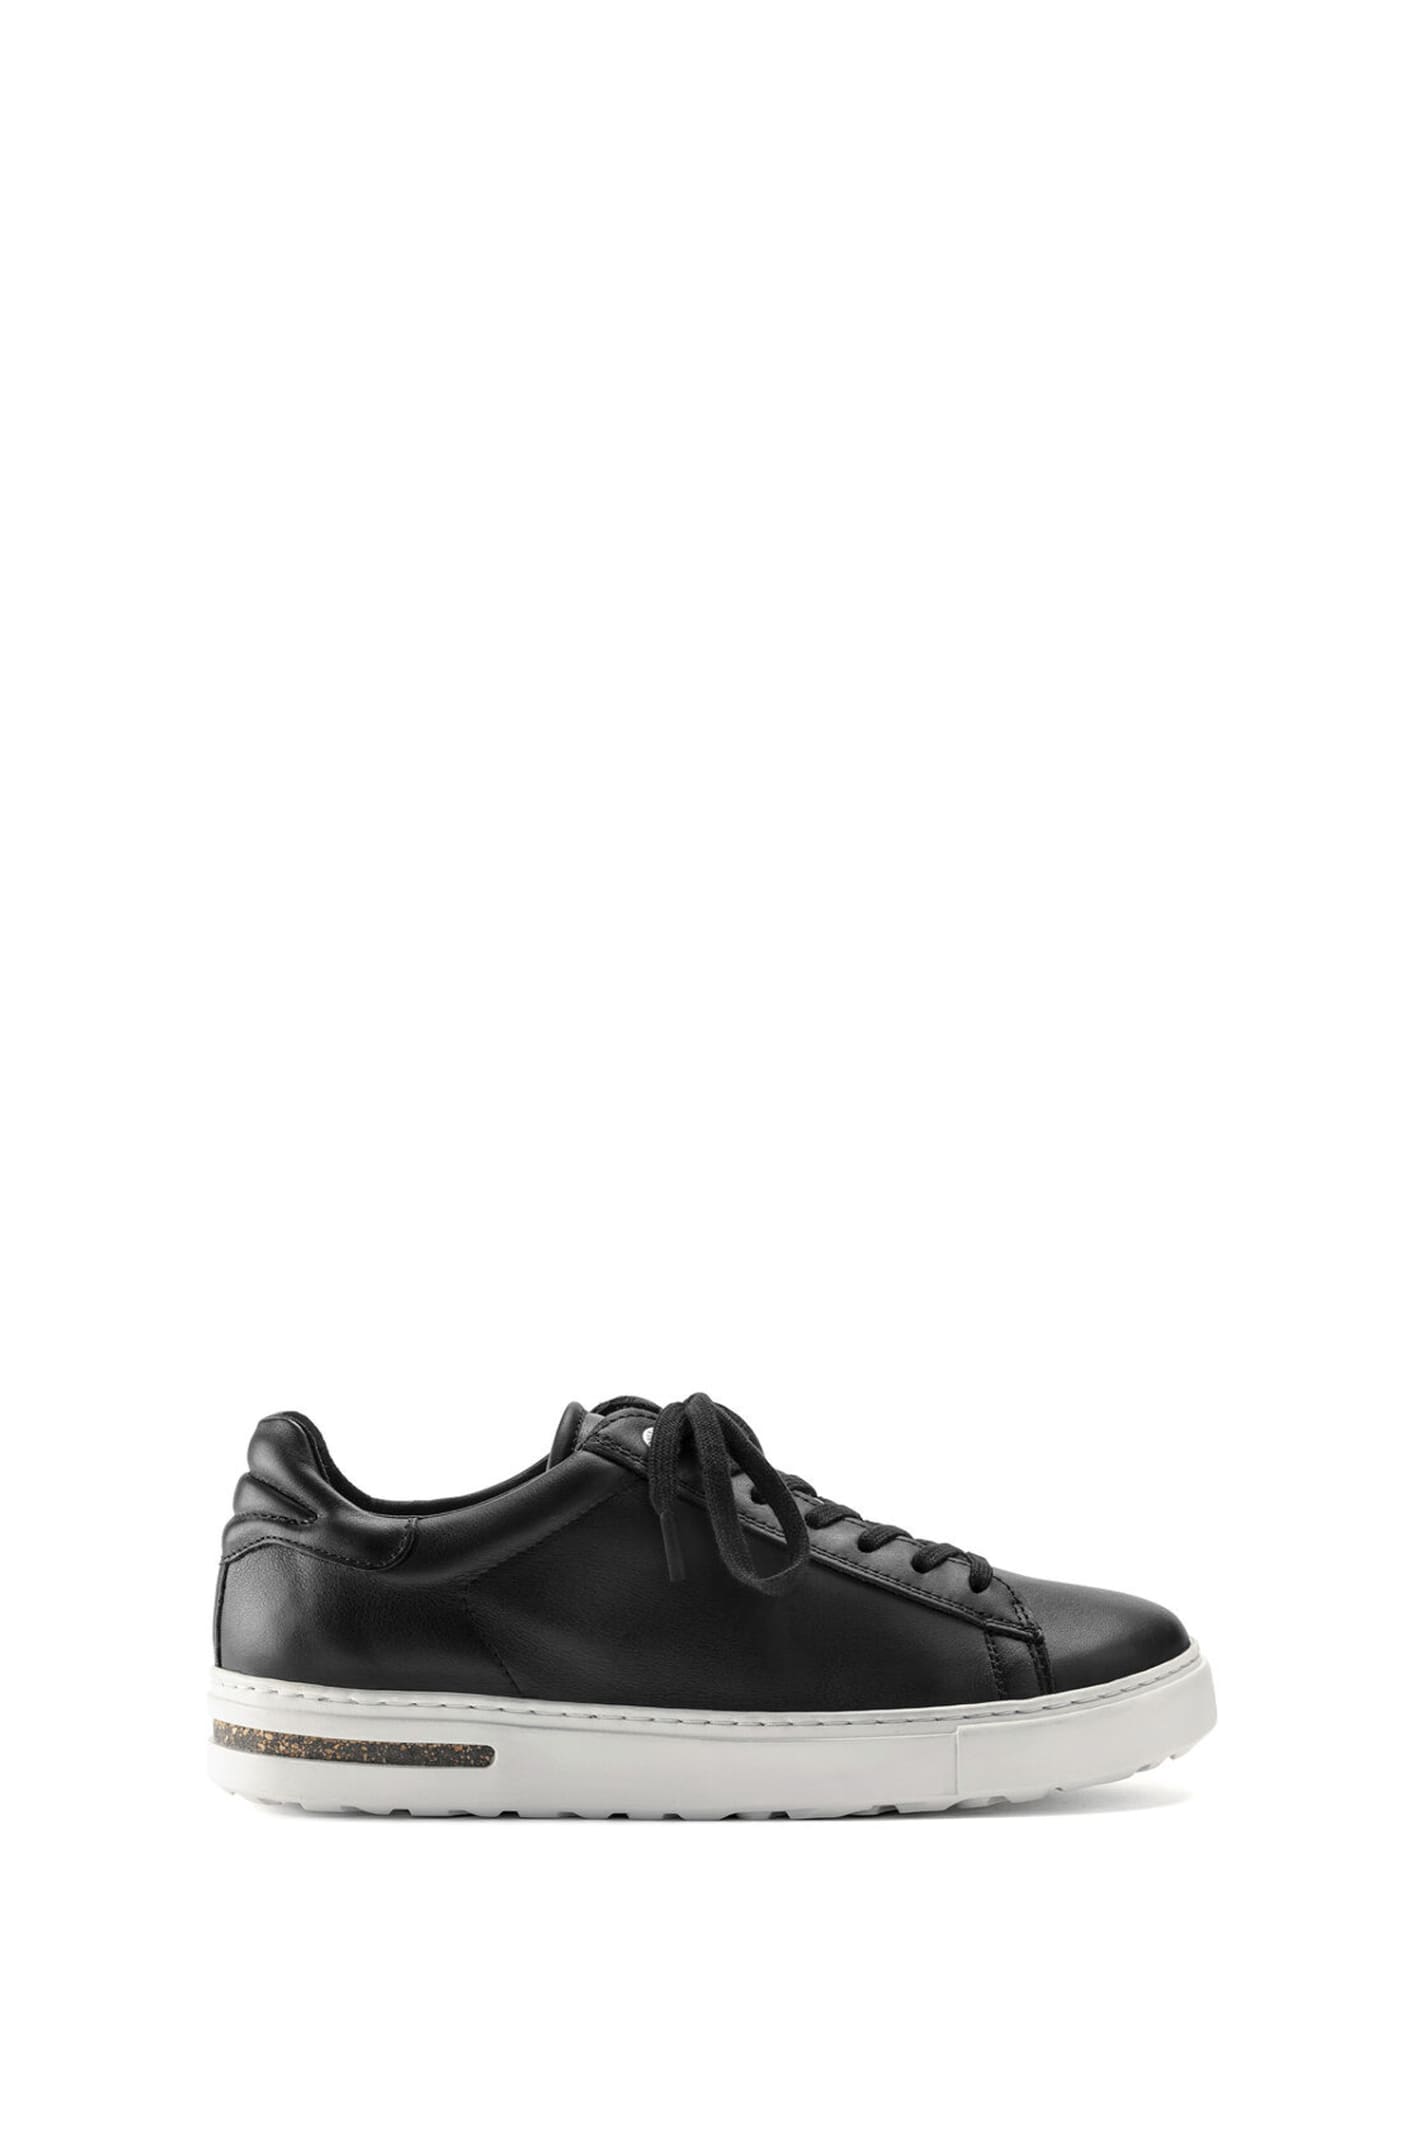 Shop Birkenstock Sneakers In Black